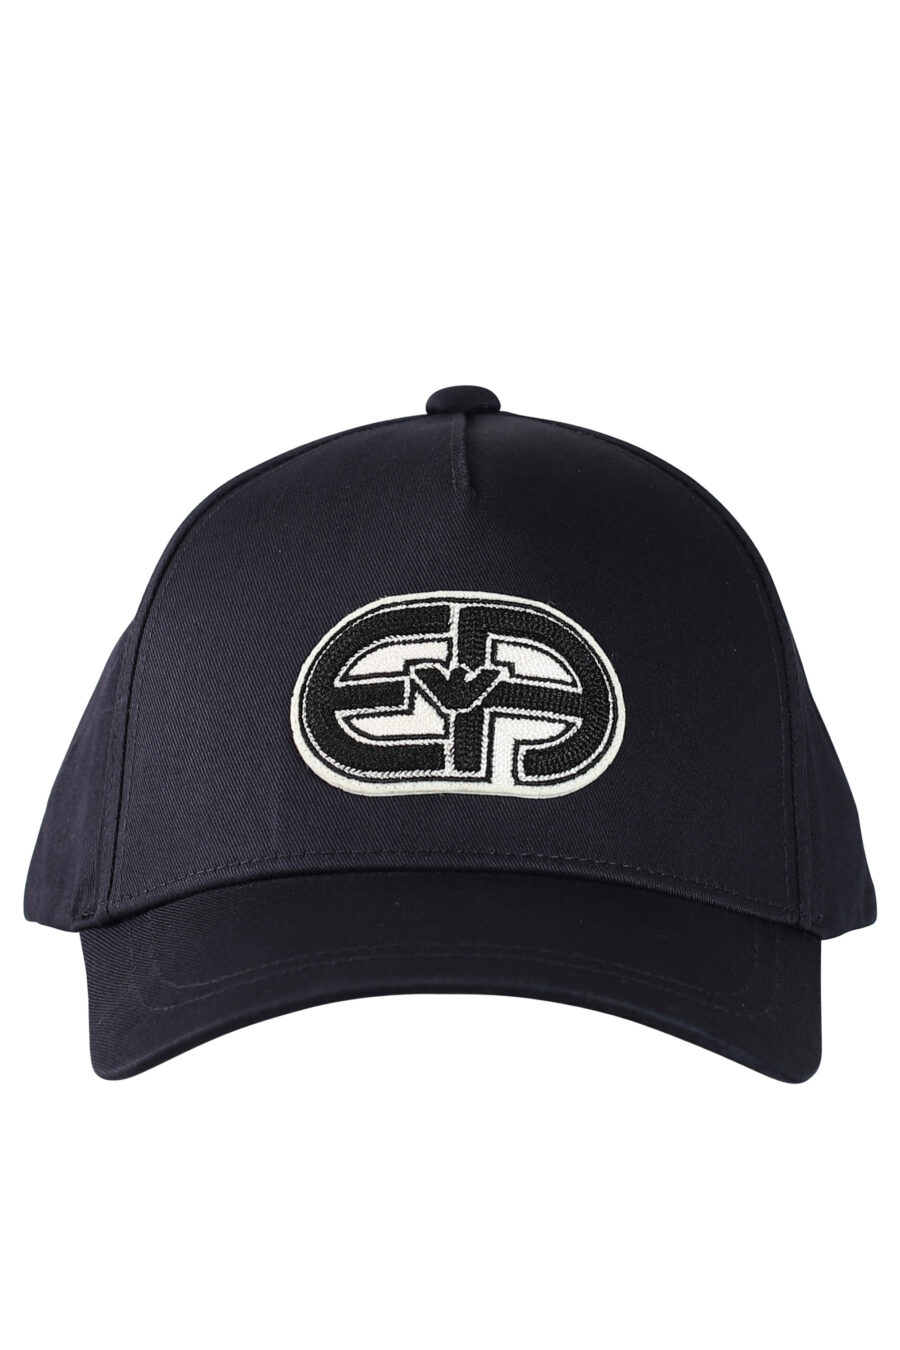 Blaue Mütze mit rundem Logo und Adler - 8053616827716